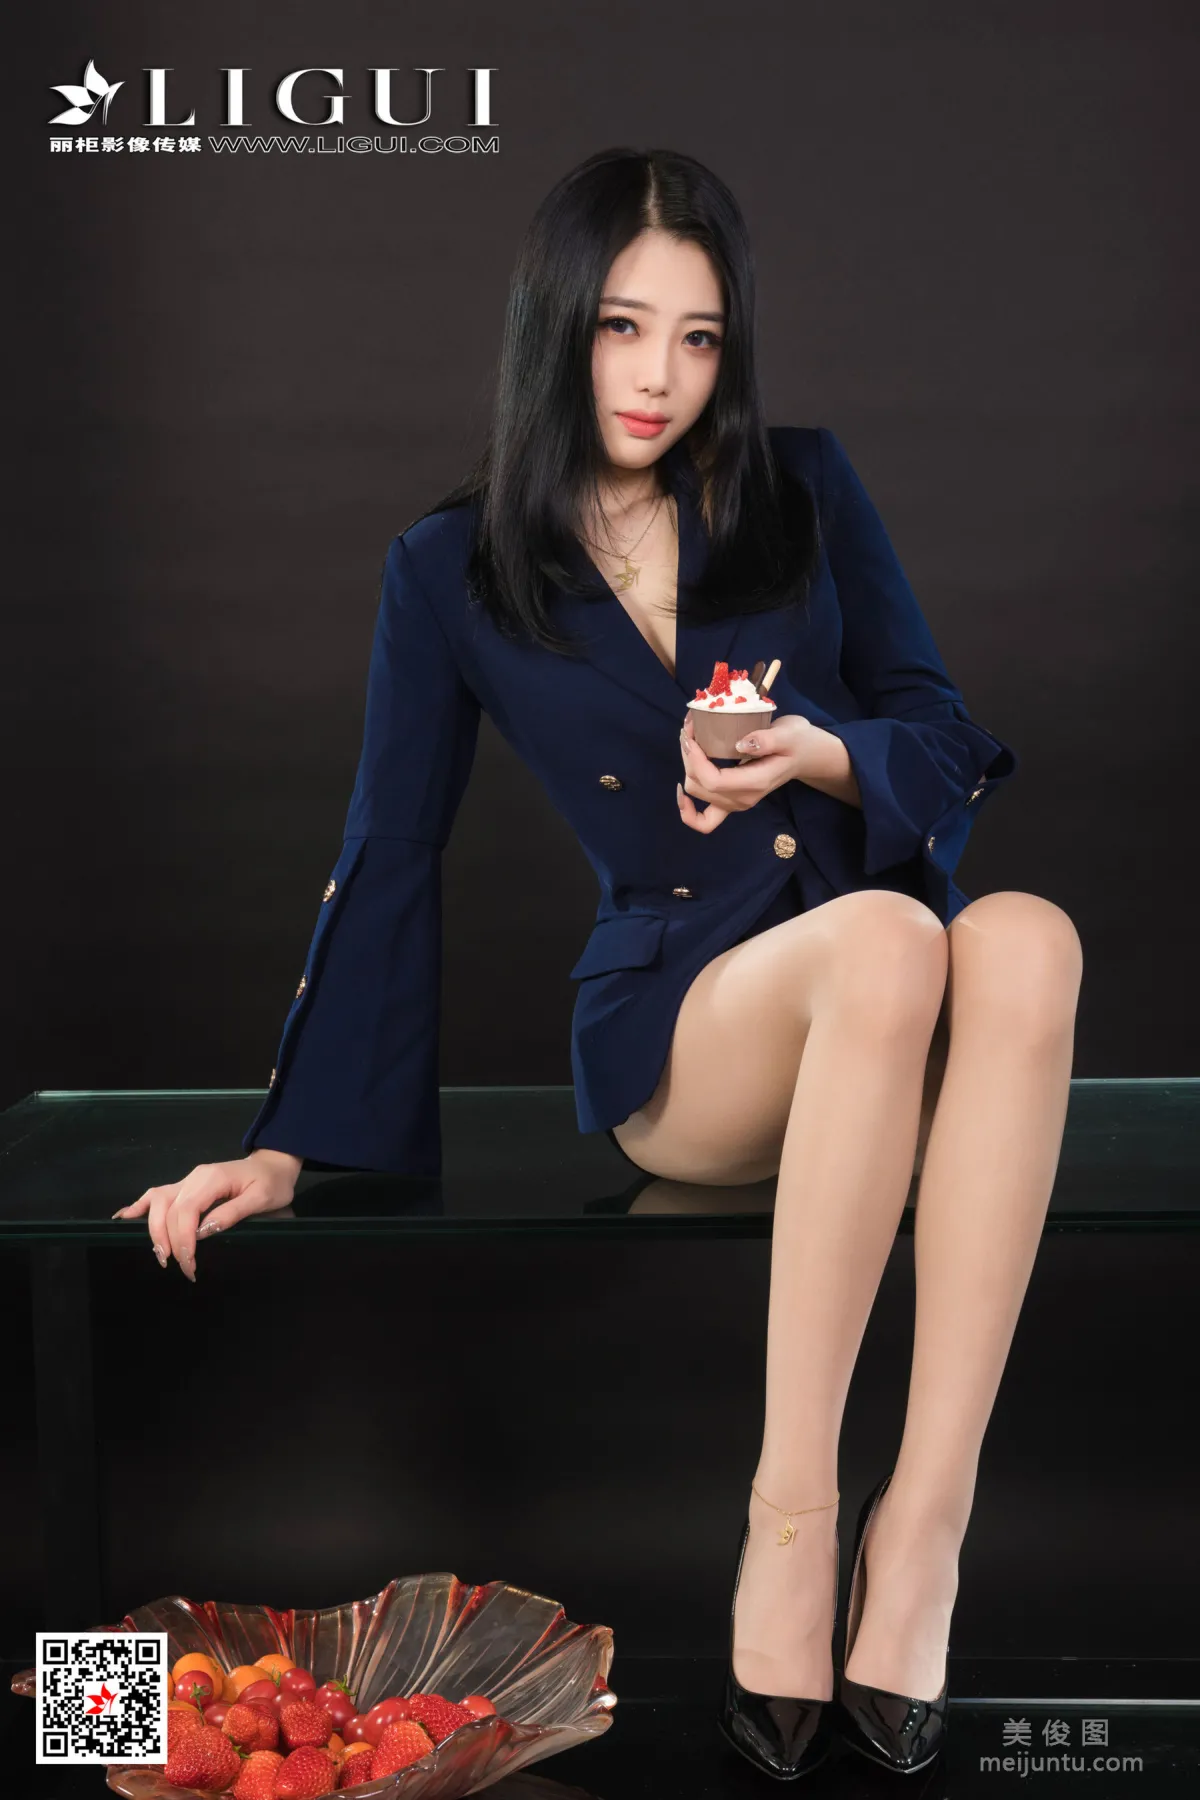 [丽柜Ligui] 网络丽人 Model 小智贤 《香丝盛宴》2